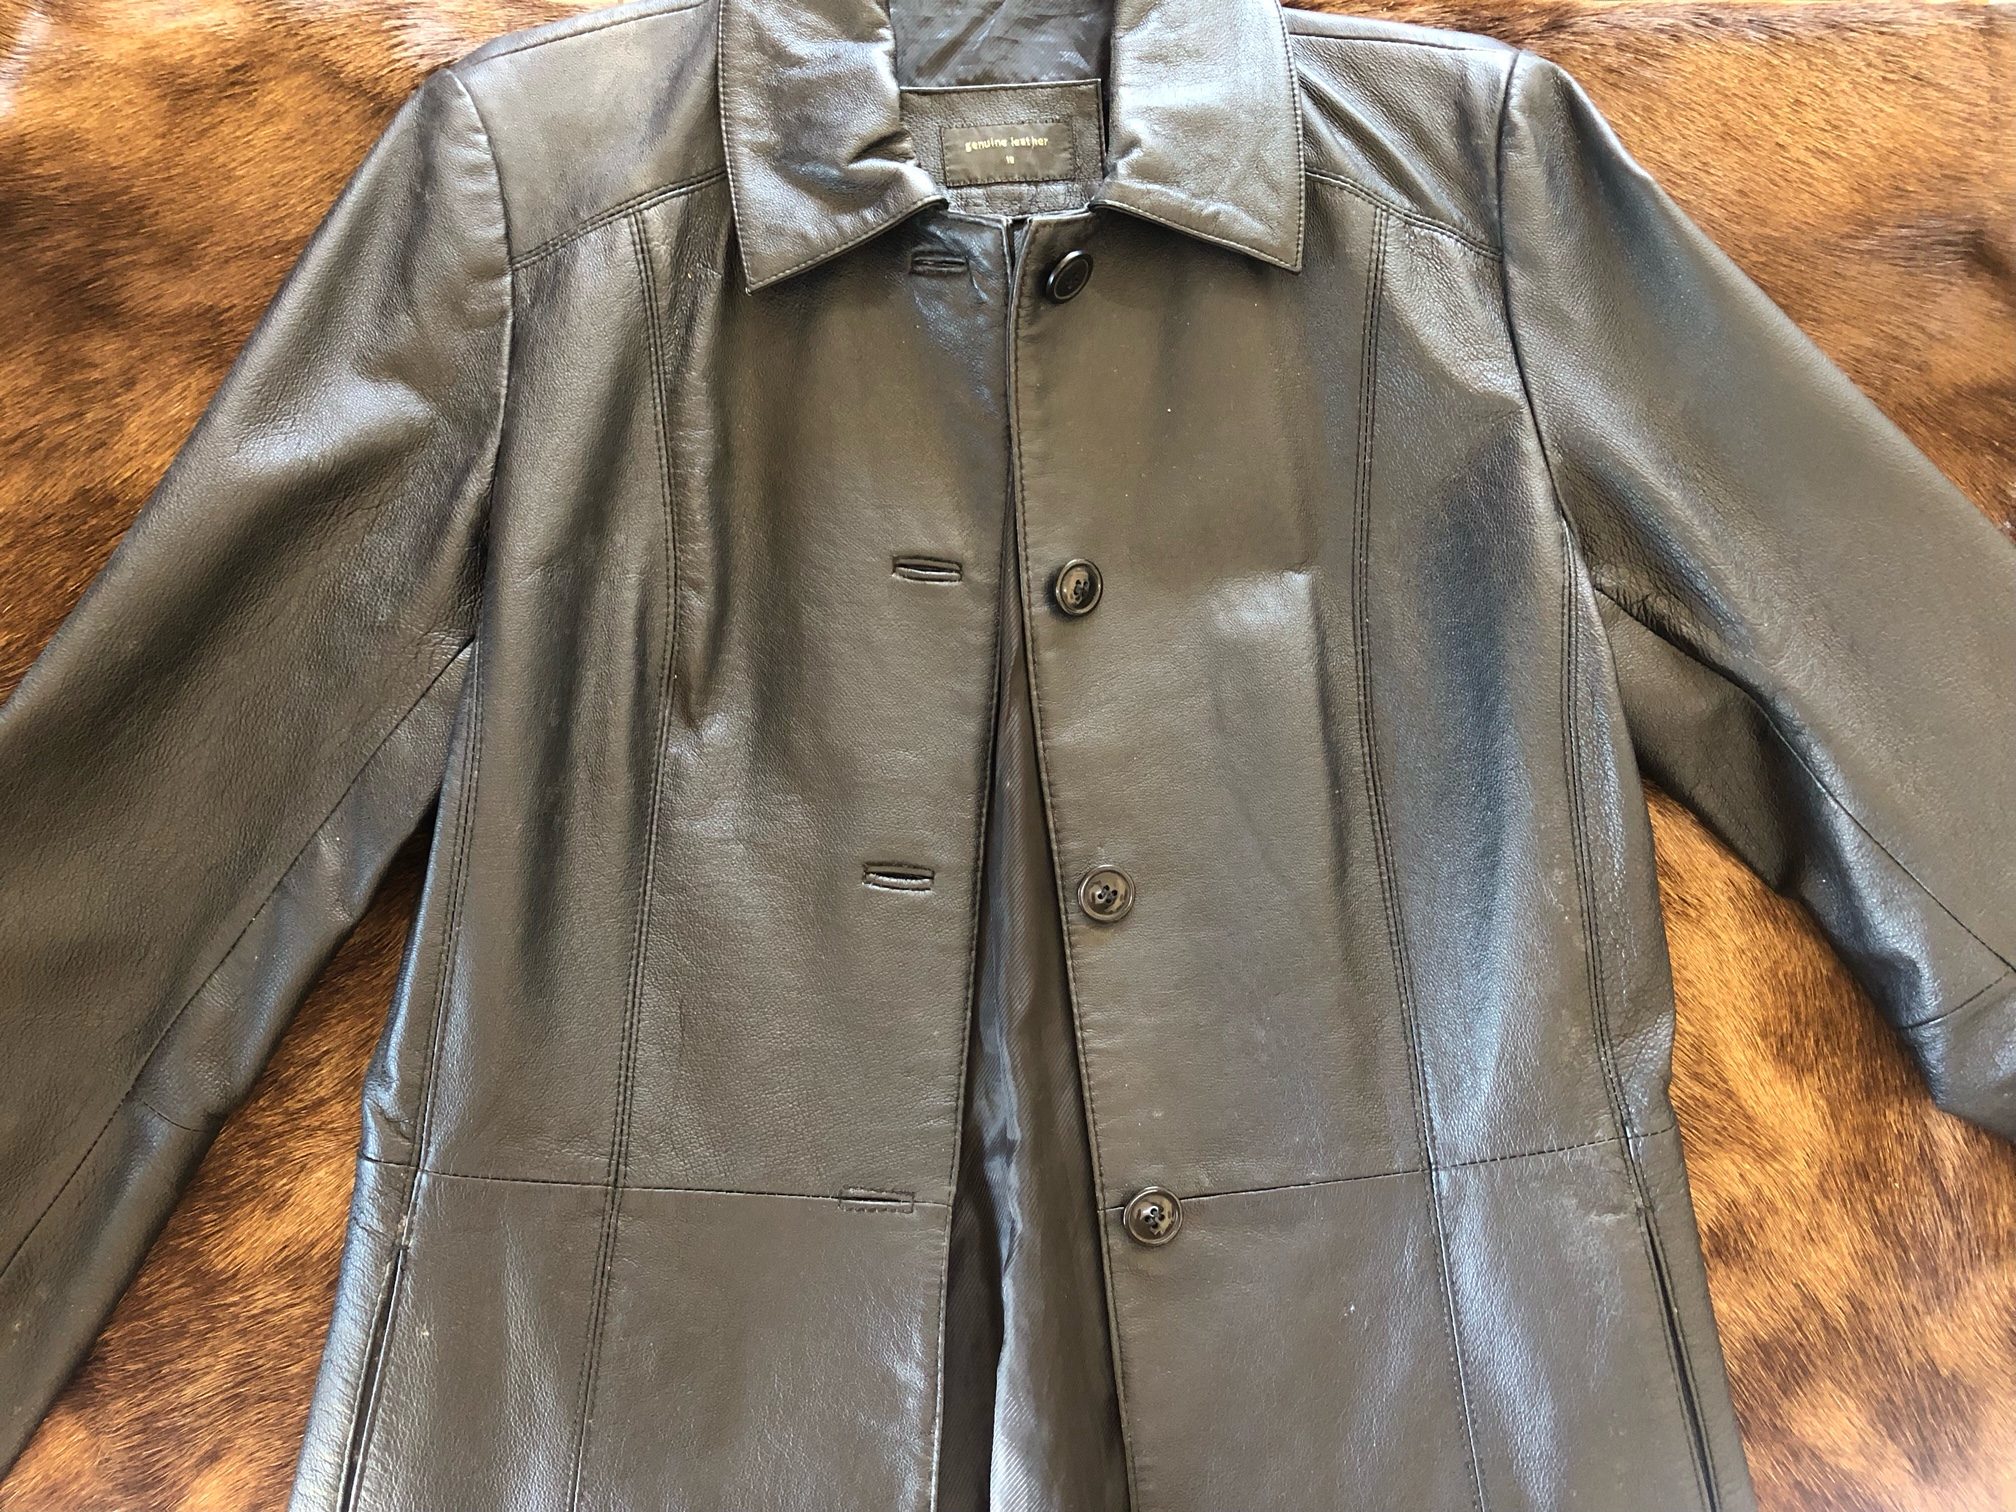 Black Leather Coat Jacket - Leather & Canvas